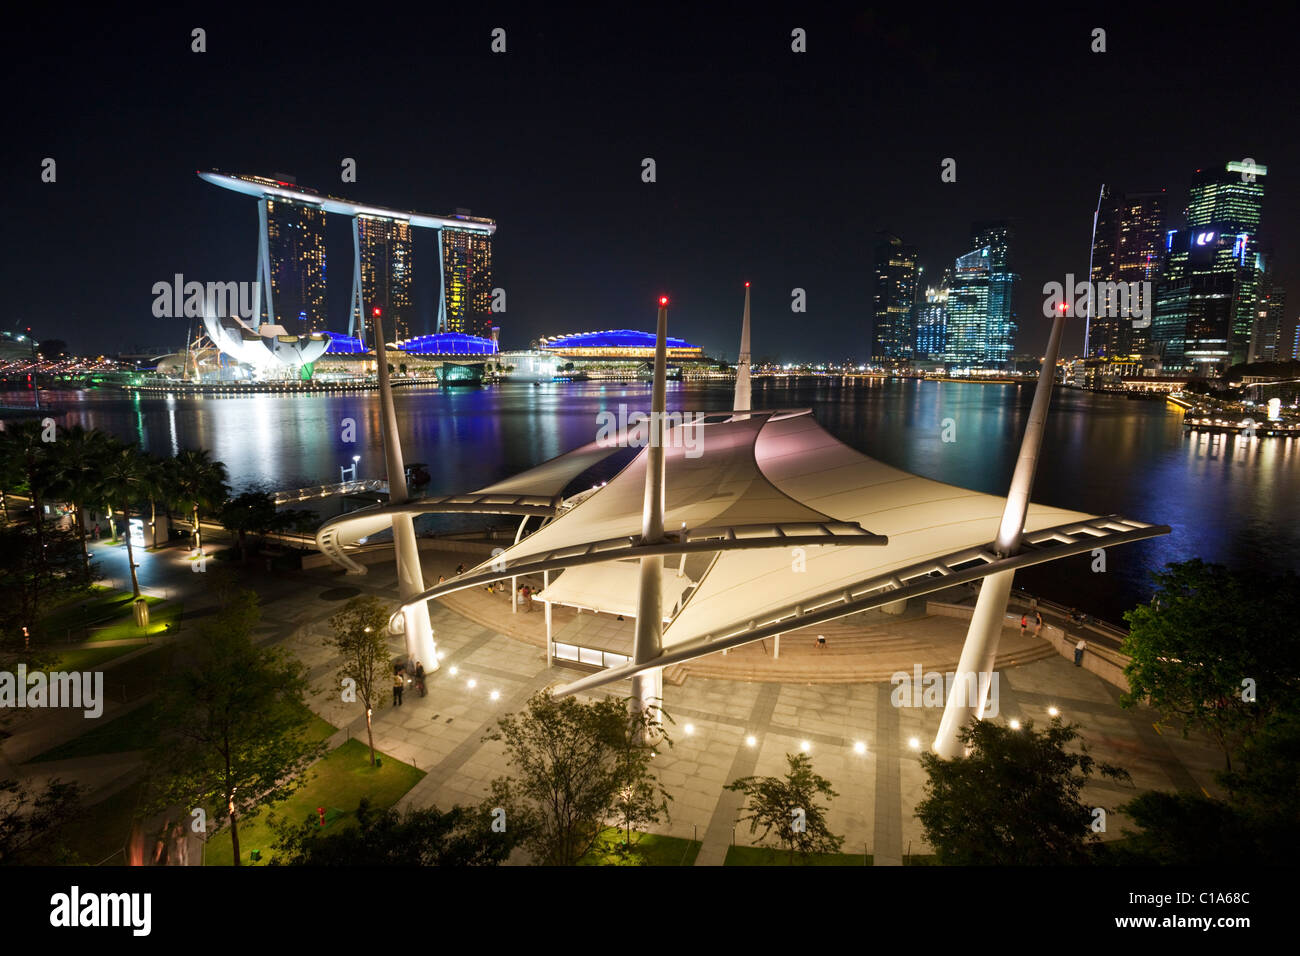 Théâtre en plein air avec le Marina Bay Sands à l'arrière-plan. Marina Bay, Singapour Banque D'Images